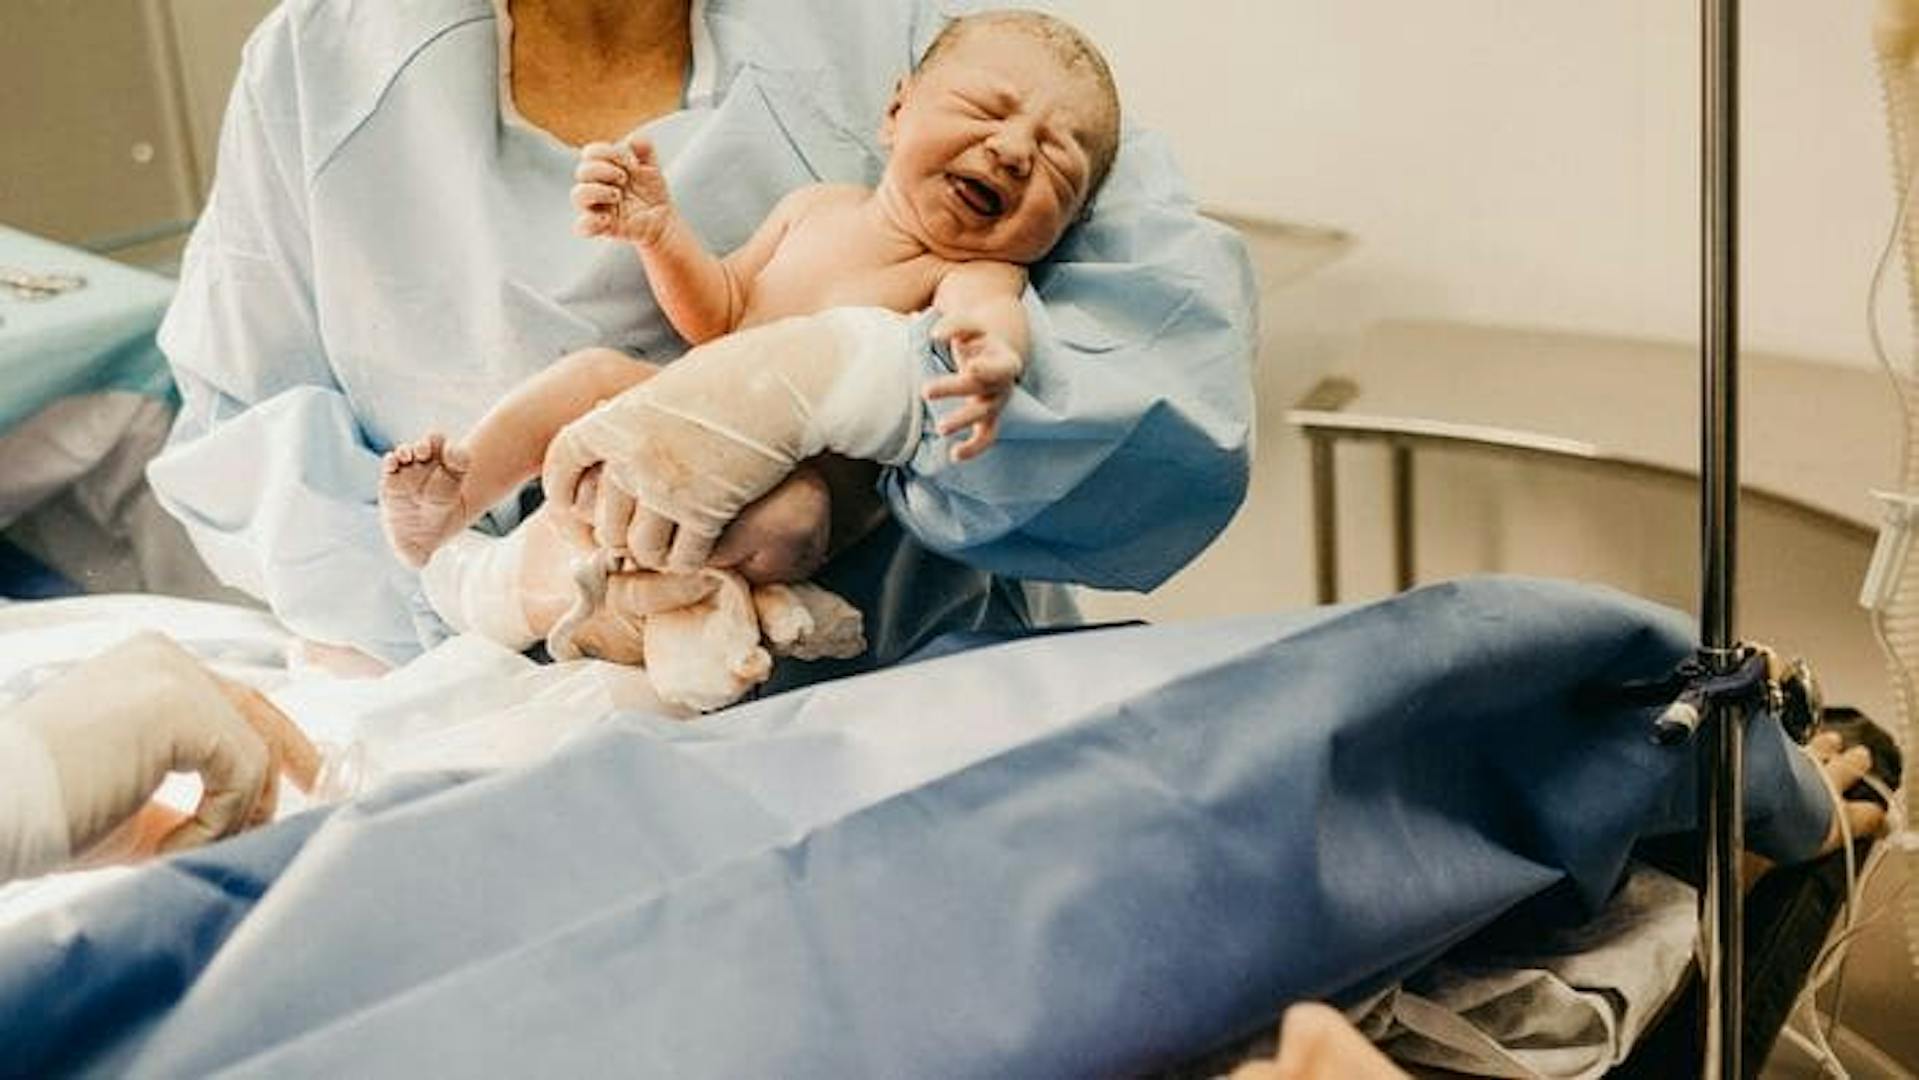 Médica segurando o bebê recém nascido pós parto